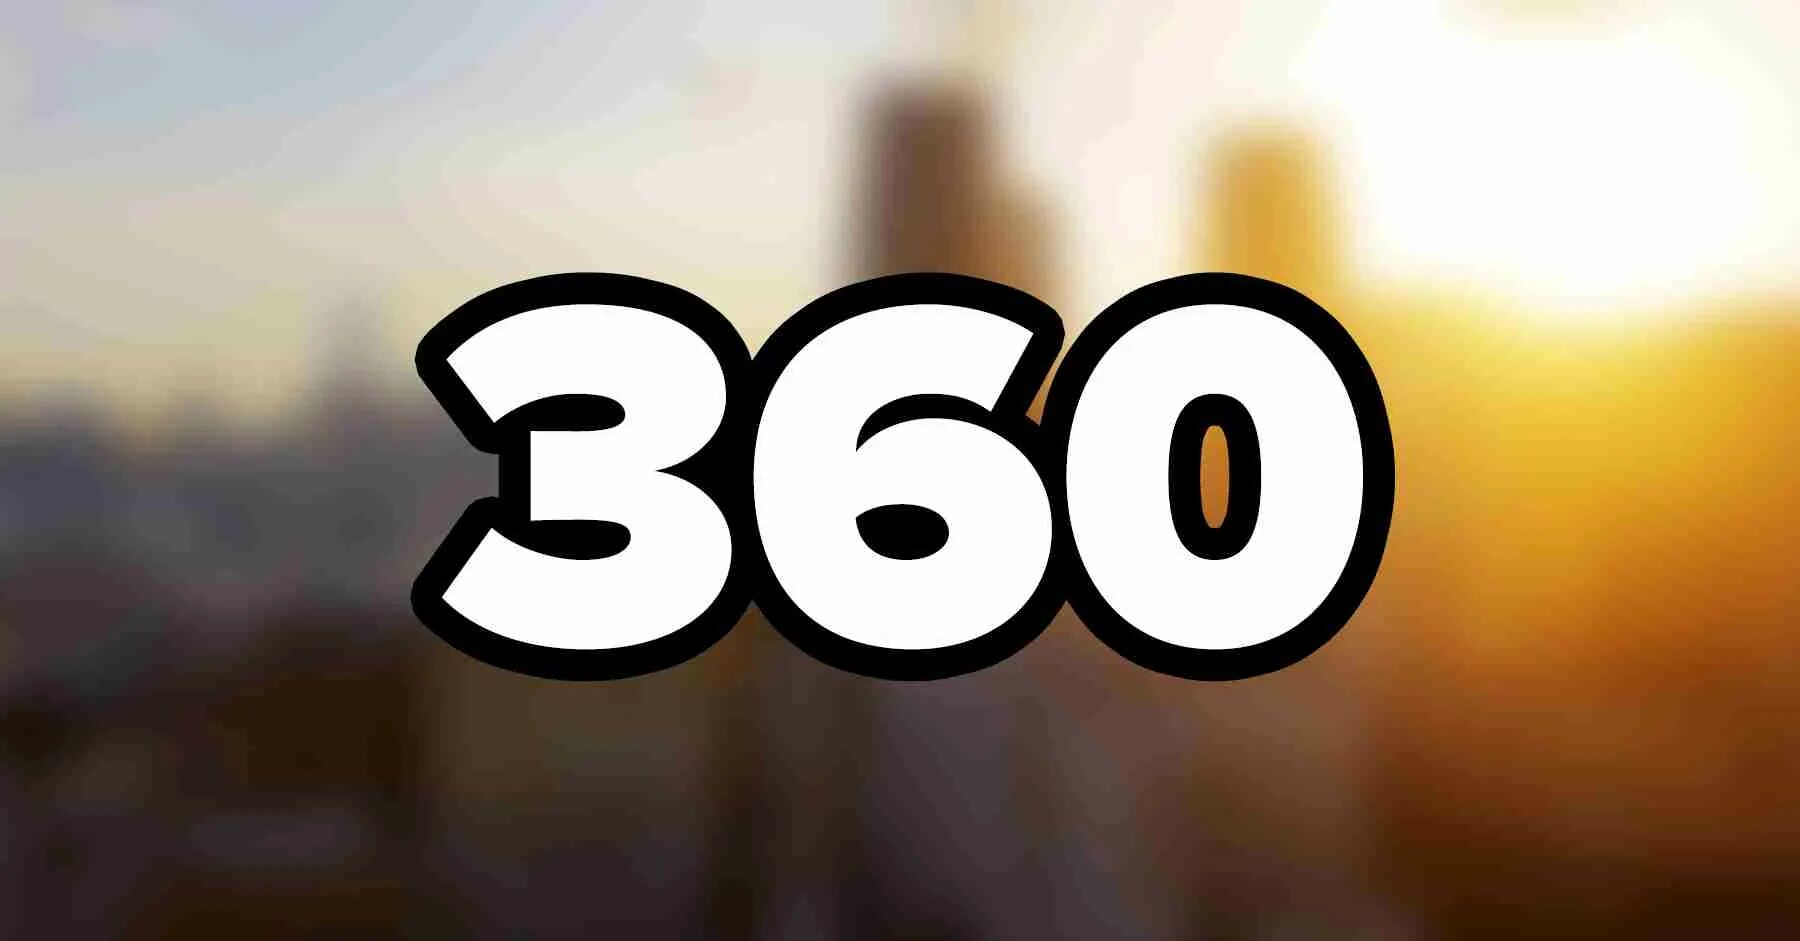 360 Цифра. Изображение 360. Красивое изображение 360. 360 Картинка цифры. 360 формате god